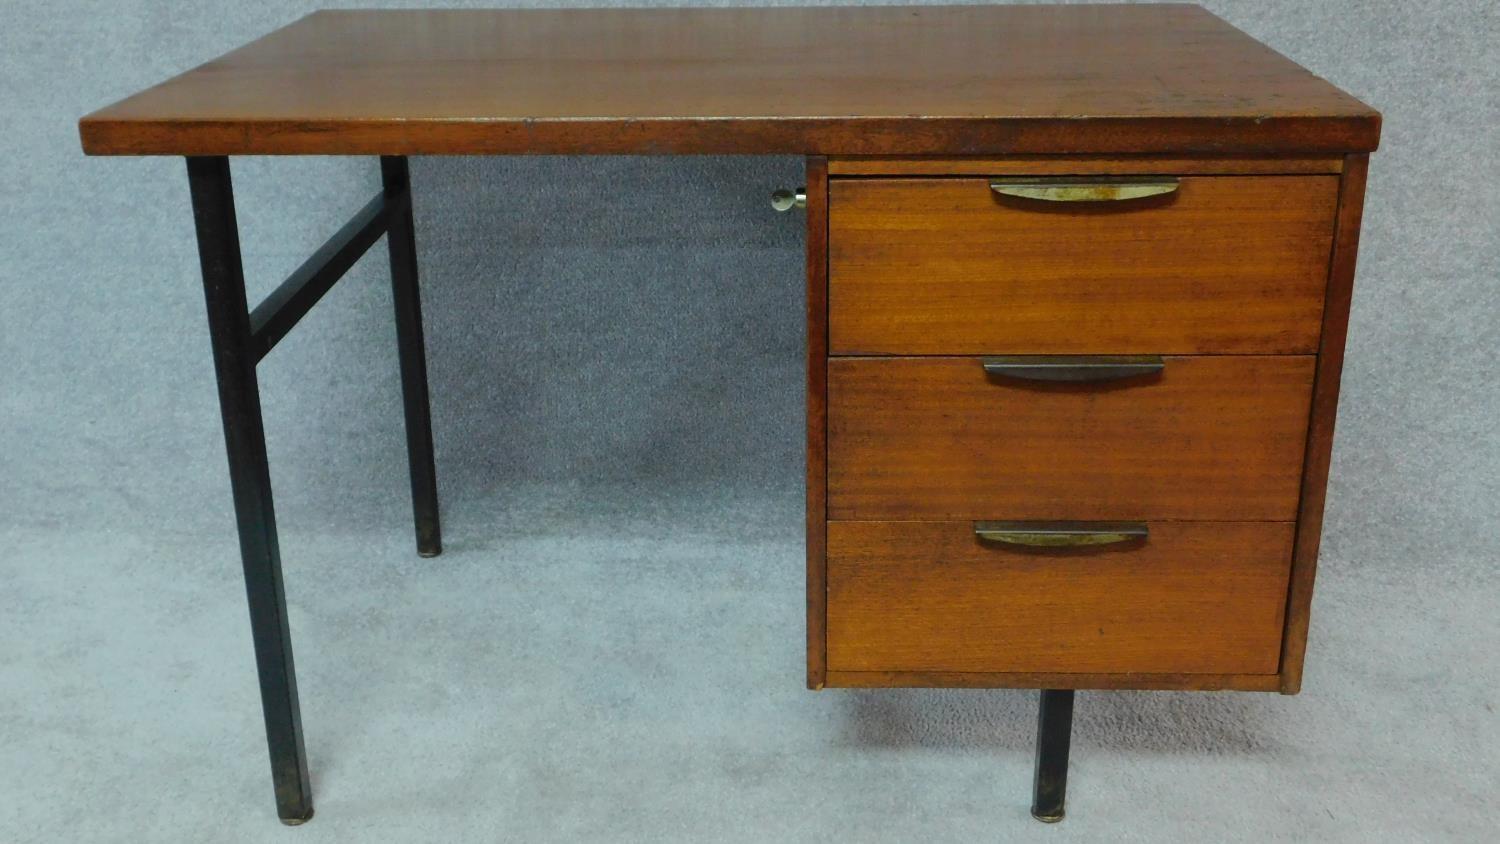 A 1950's vintage teak and metal framed pedestal desk by evertaut formula furniture, stamped to the